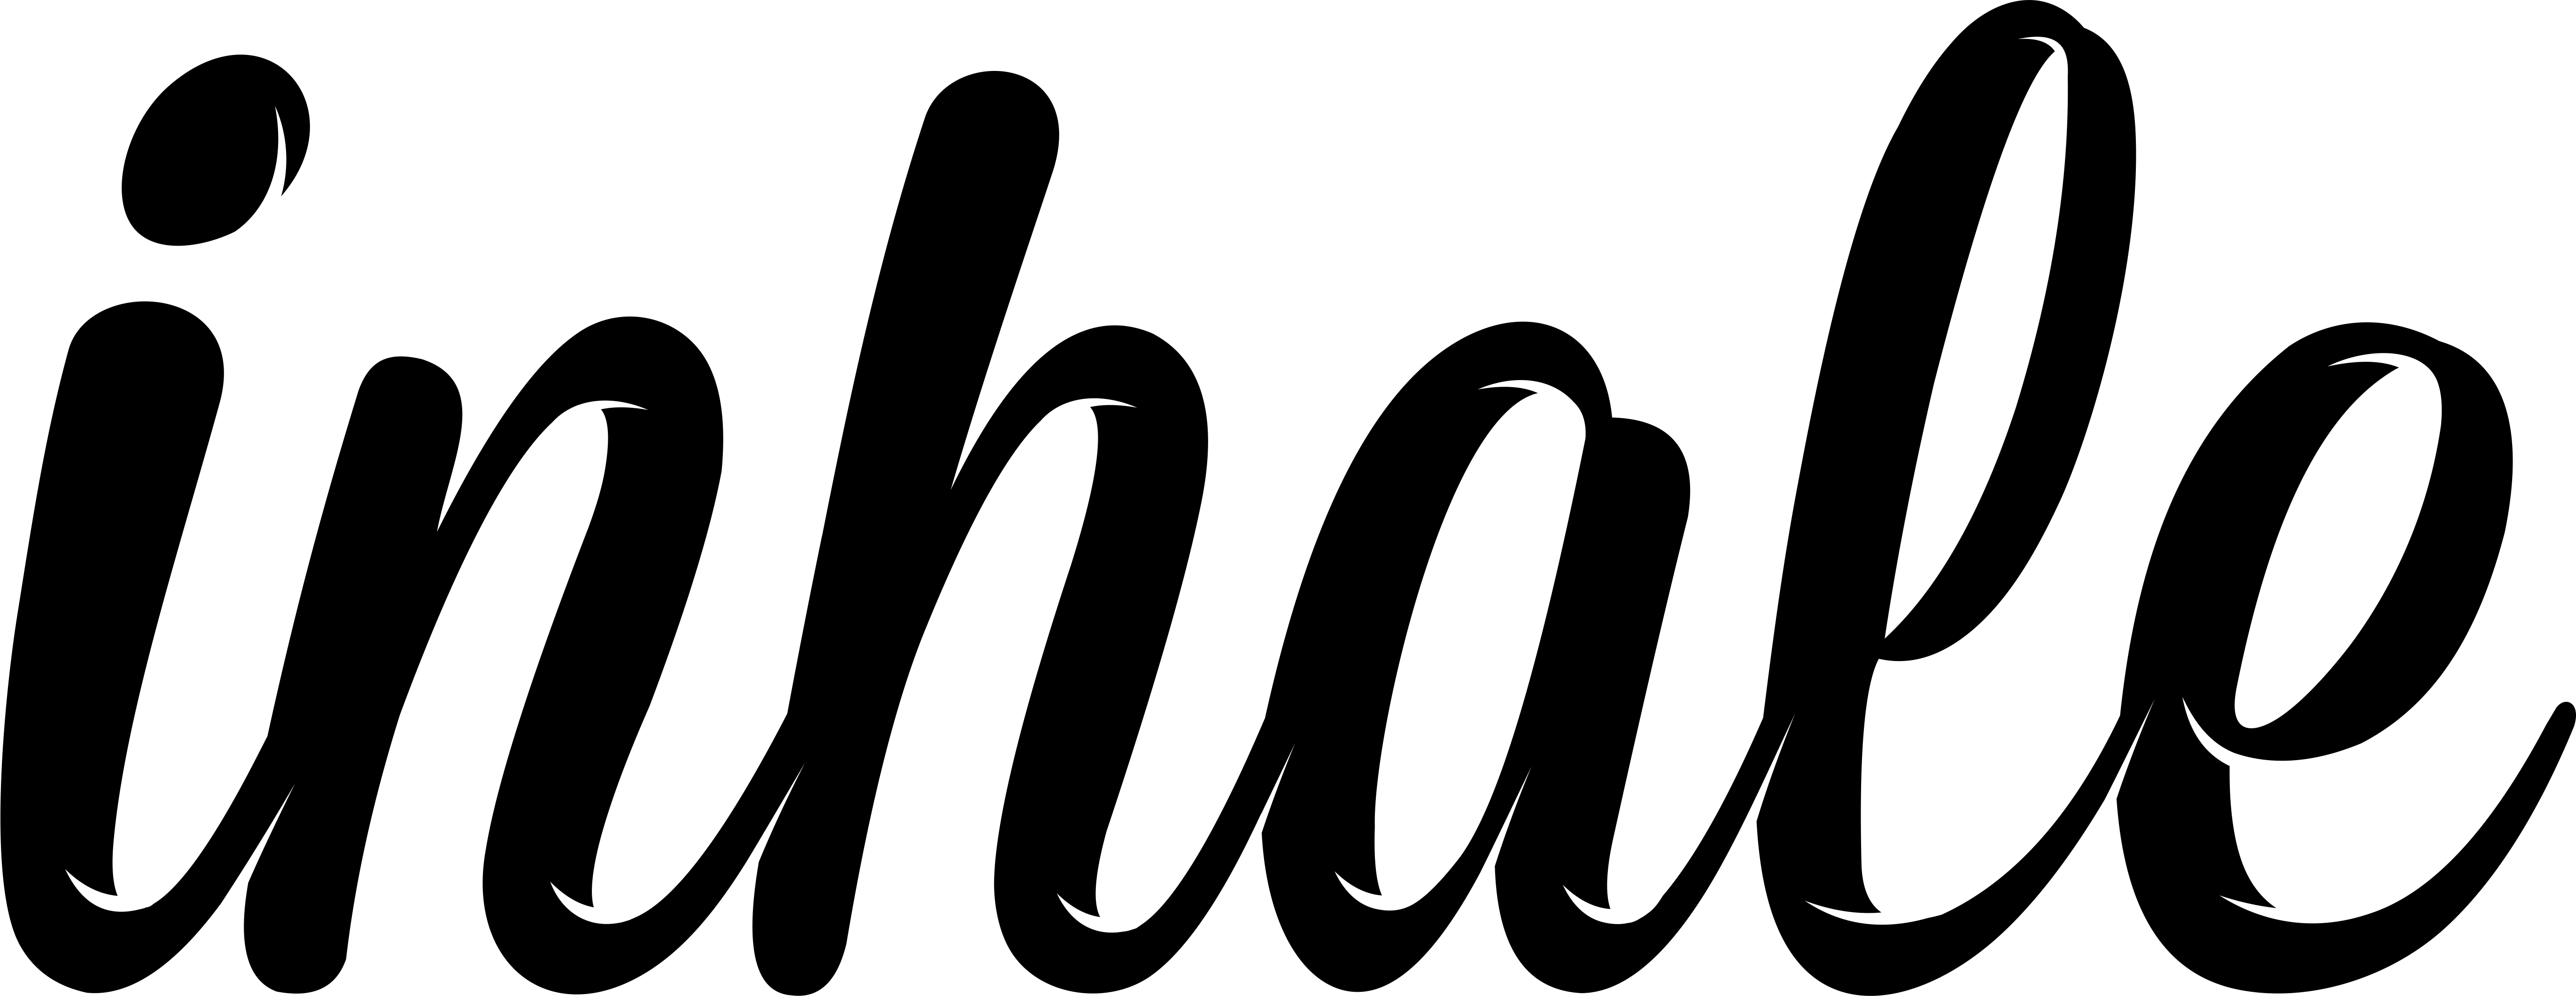 Inhale Logo - logo Inhale 2018 – Inhale Coils